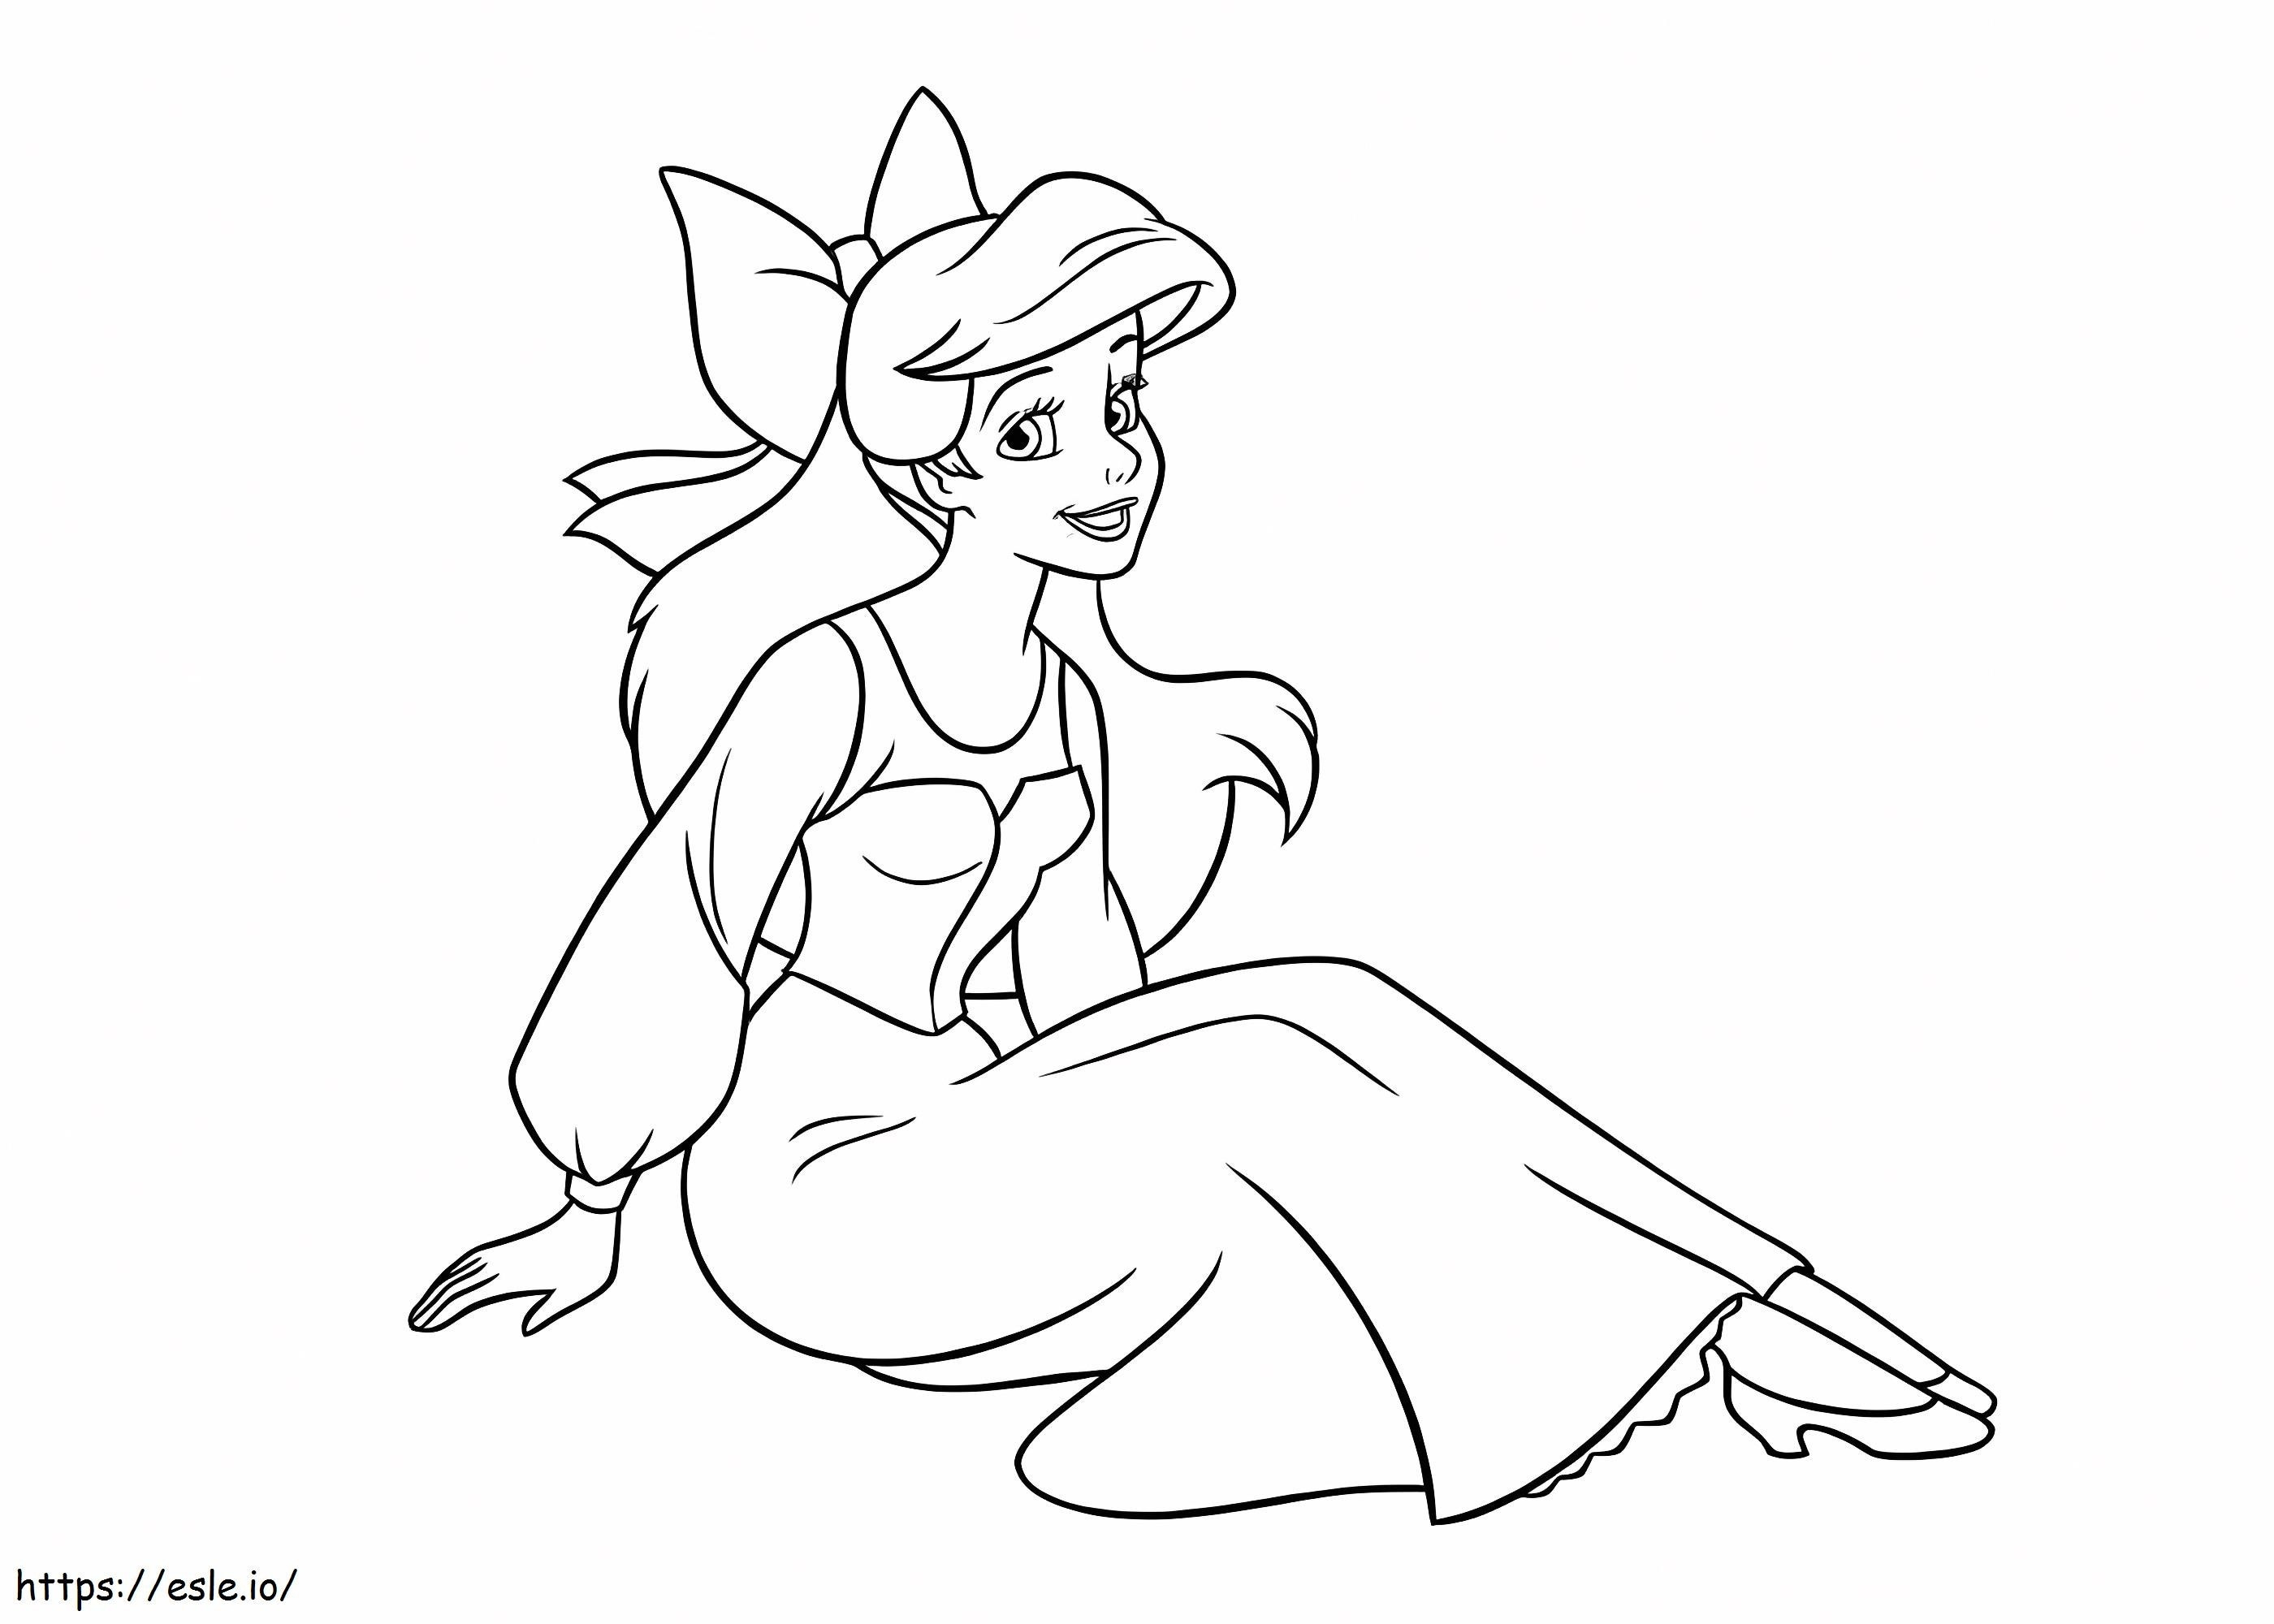 Lustiges Ariel sitzend ausmalbilder